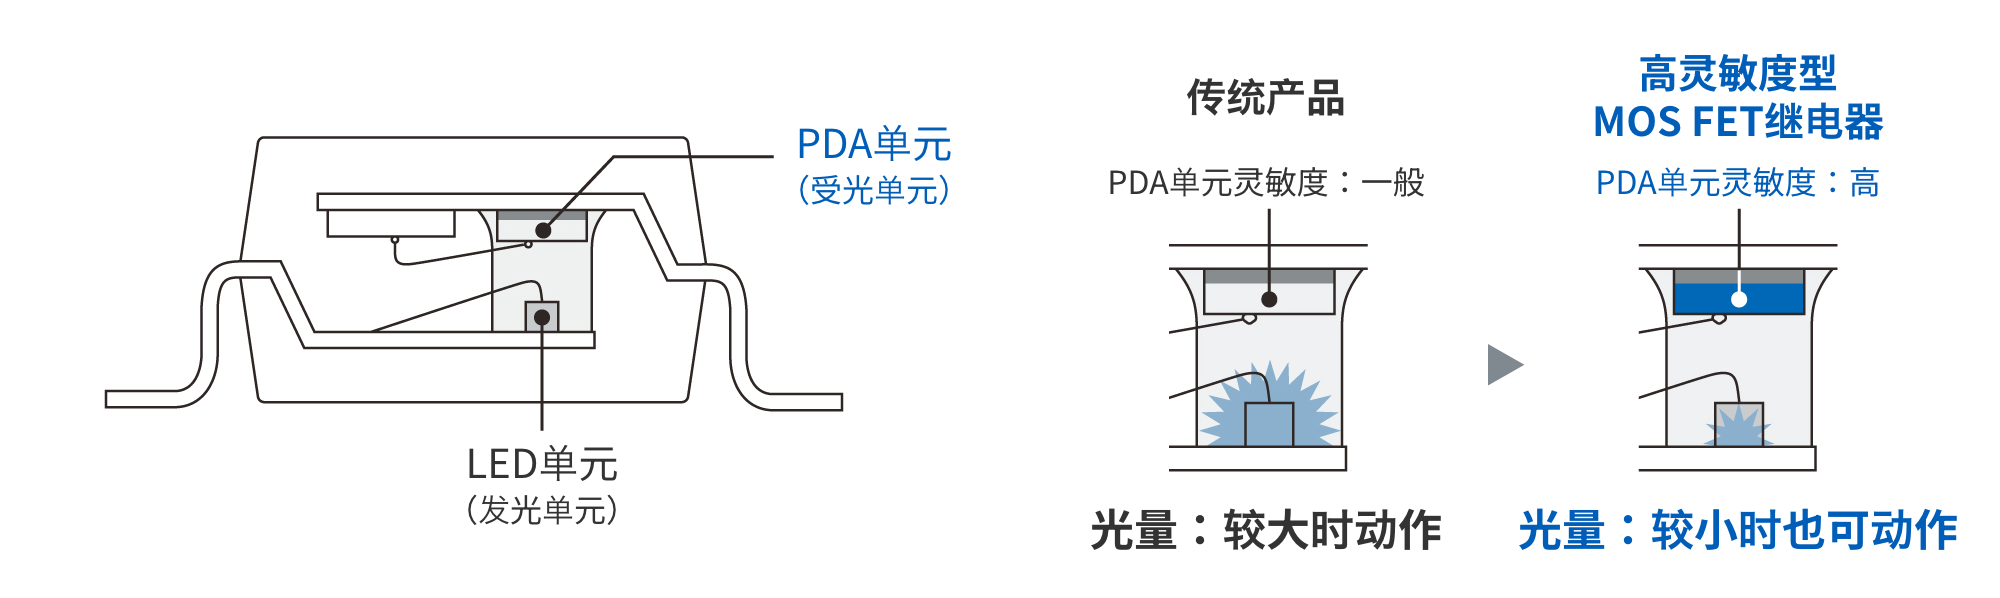 传统产品：PDA单元灵敏度：一般、光量：较大时动作　高灵敏度型MOS FET继电器：PDA单元灵敏度：高、光量：较小时也可动作